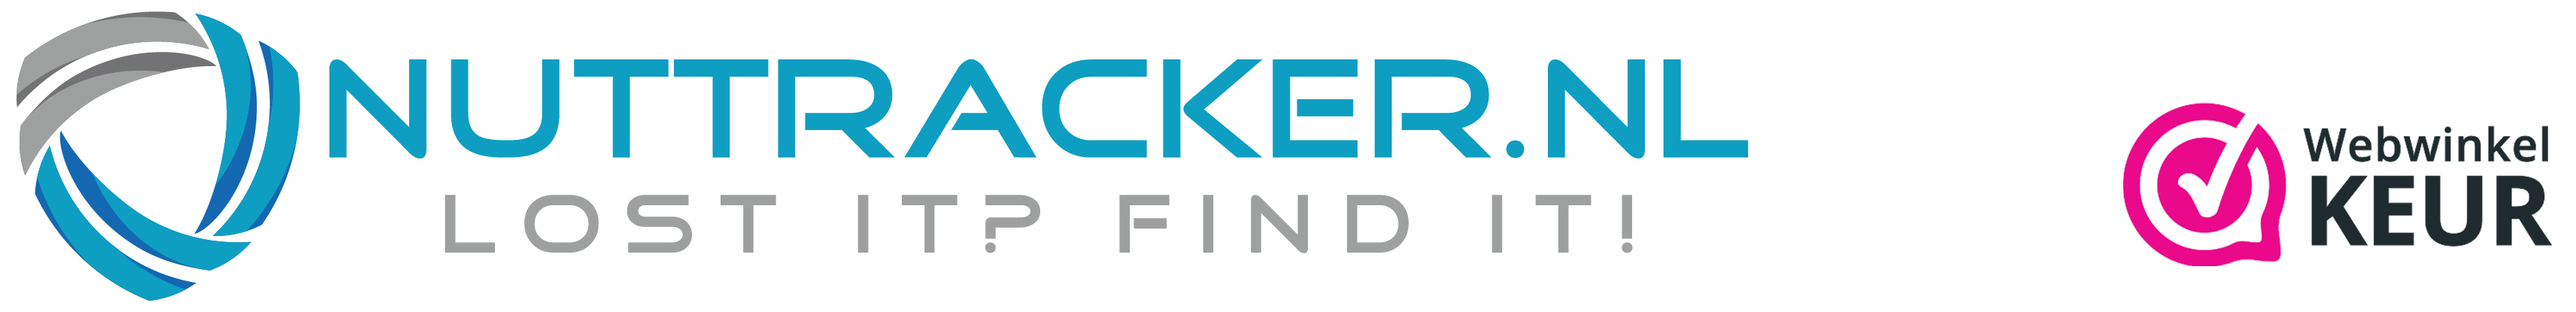 Nuttracker.nl logo